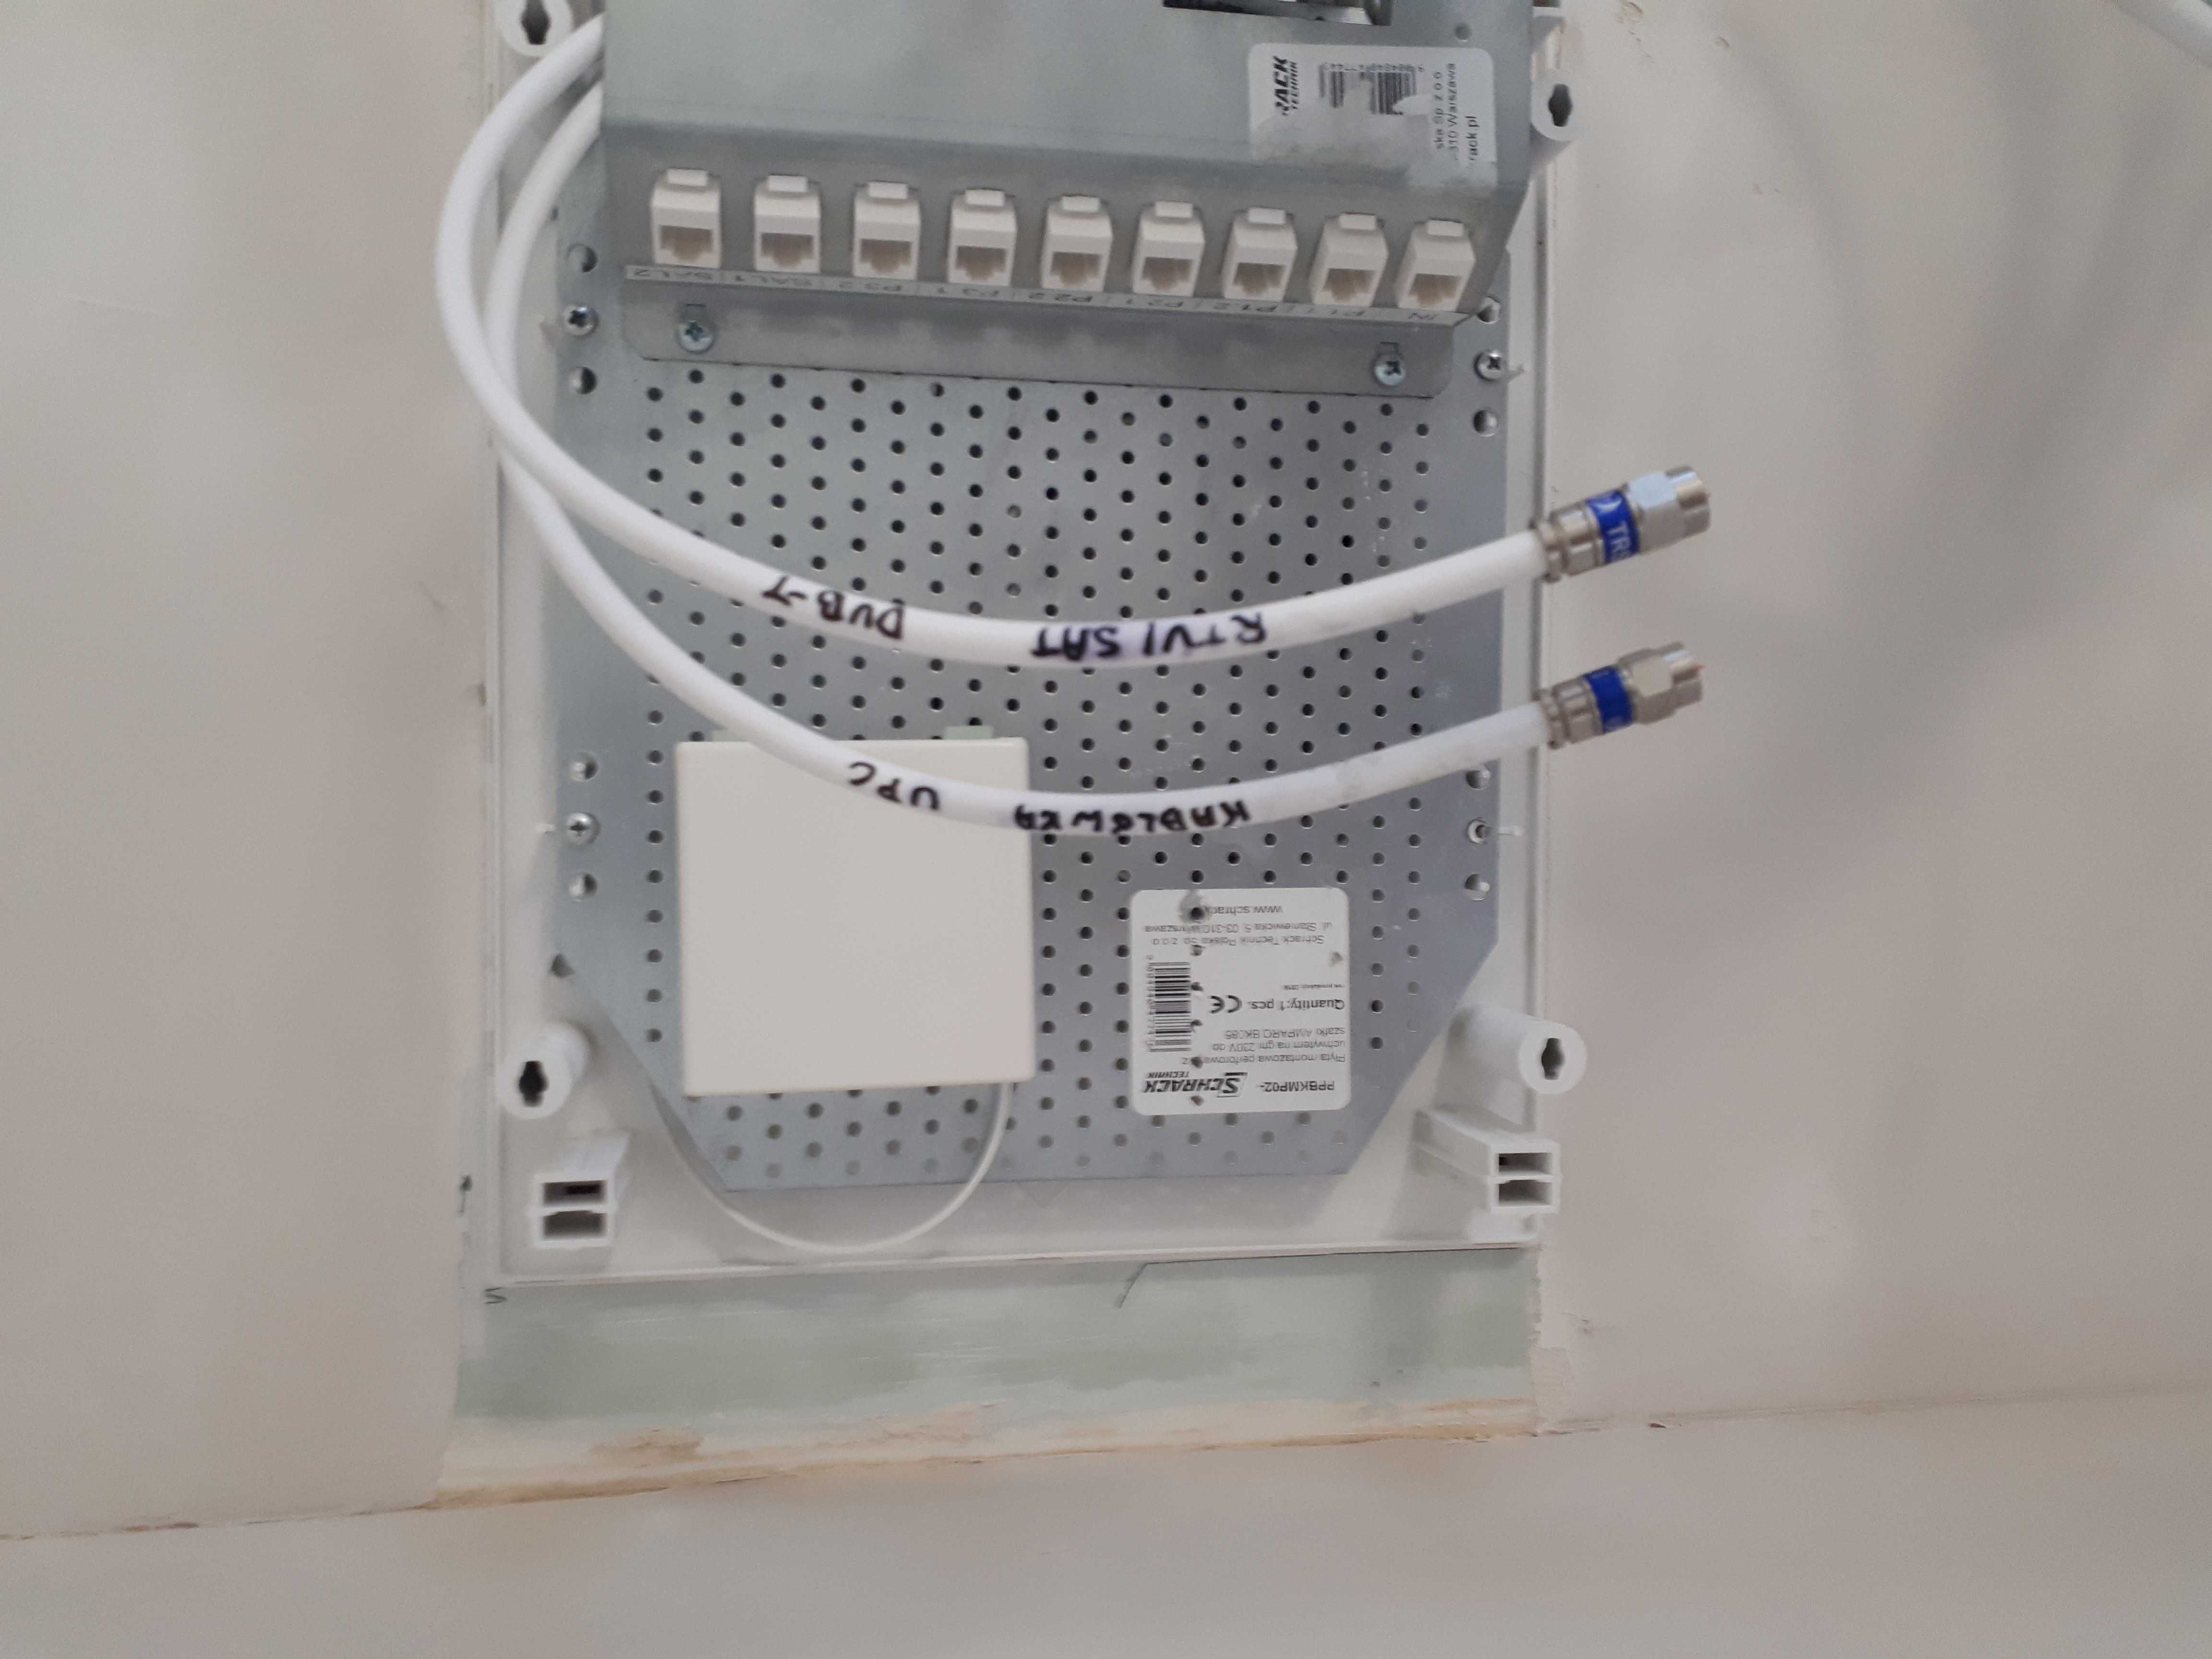 Instalacje montaż sieć ethernet LAN rj45 spawanie światłowodów, RACK